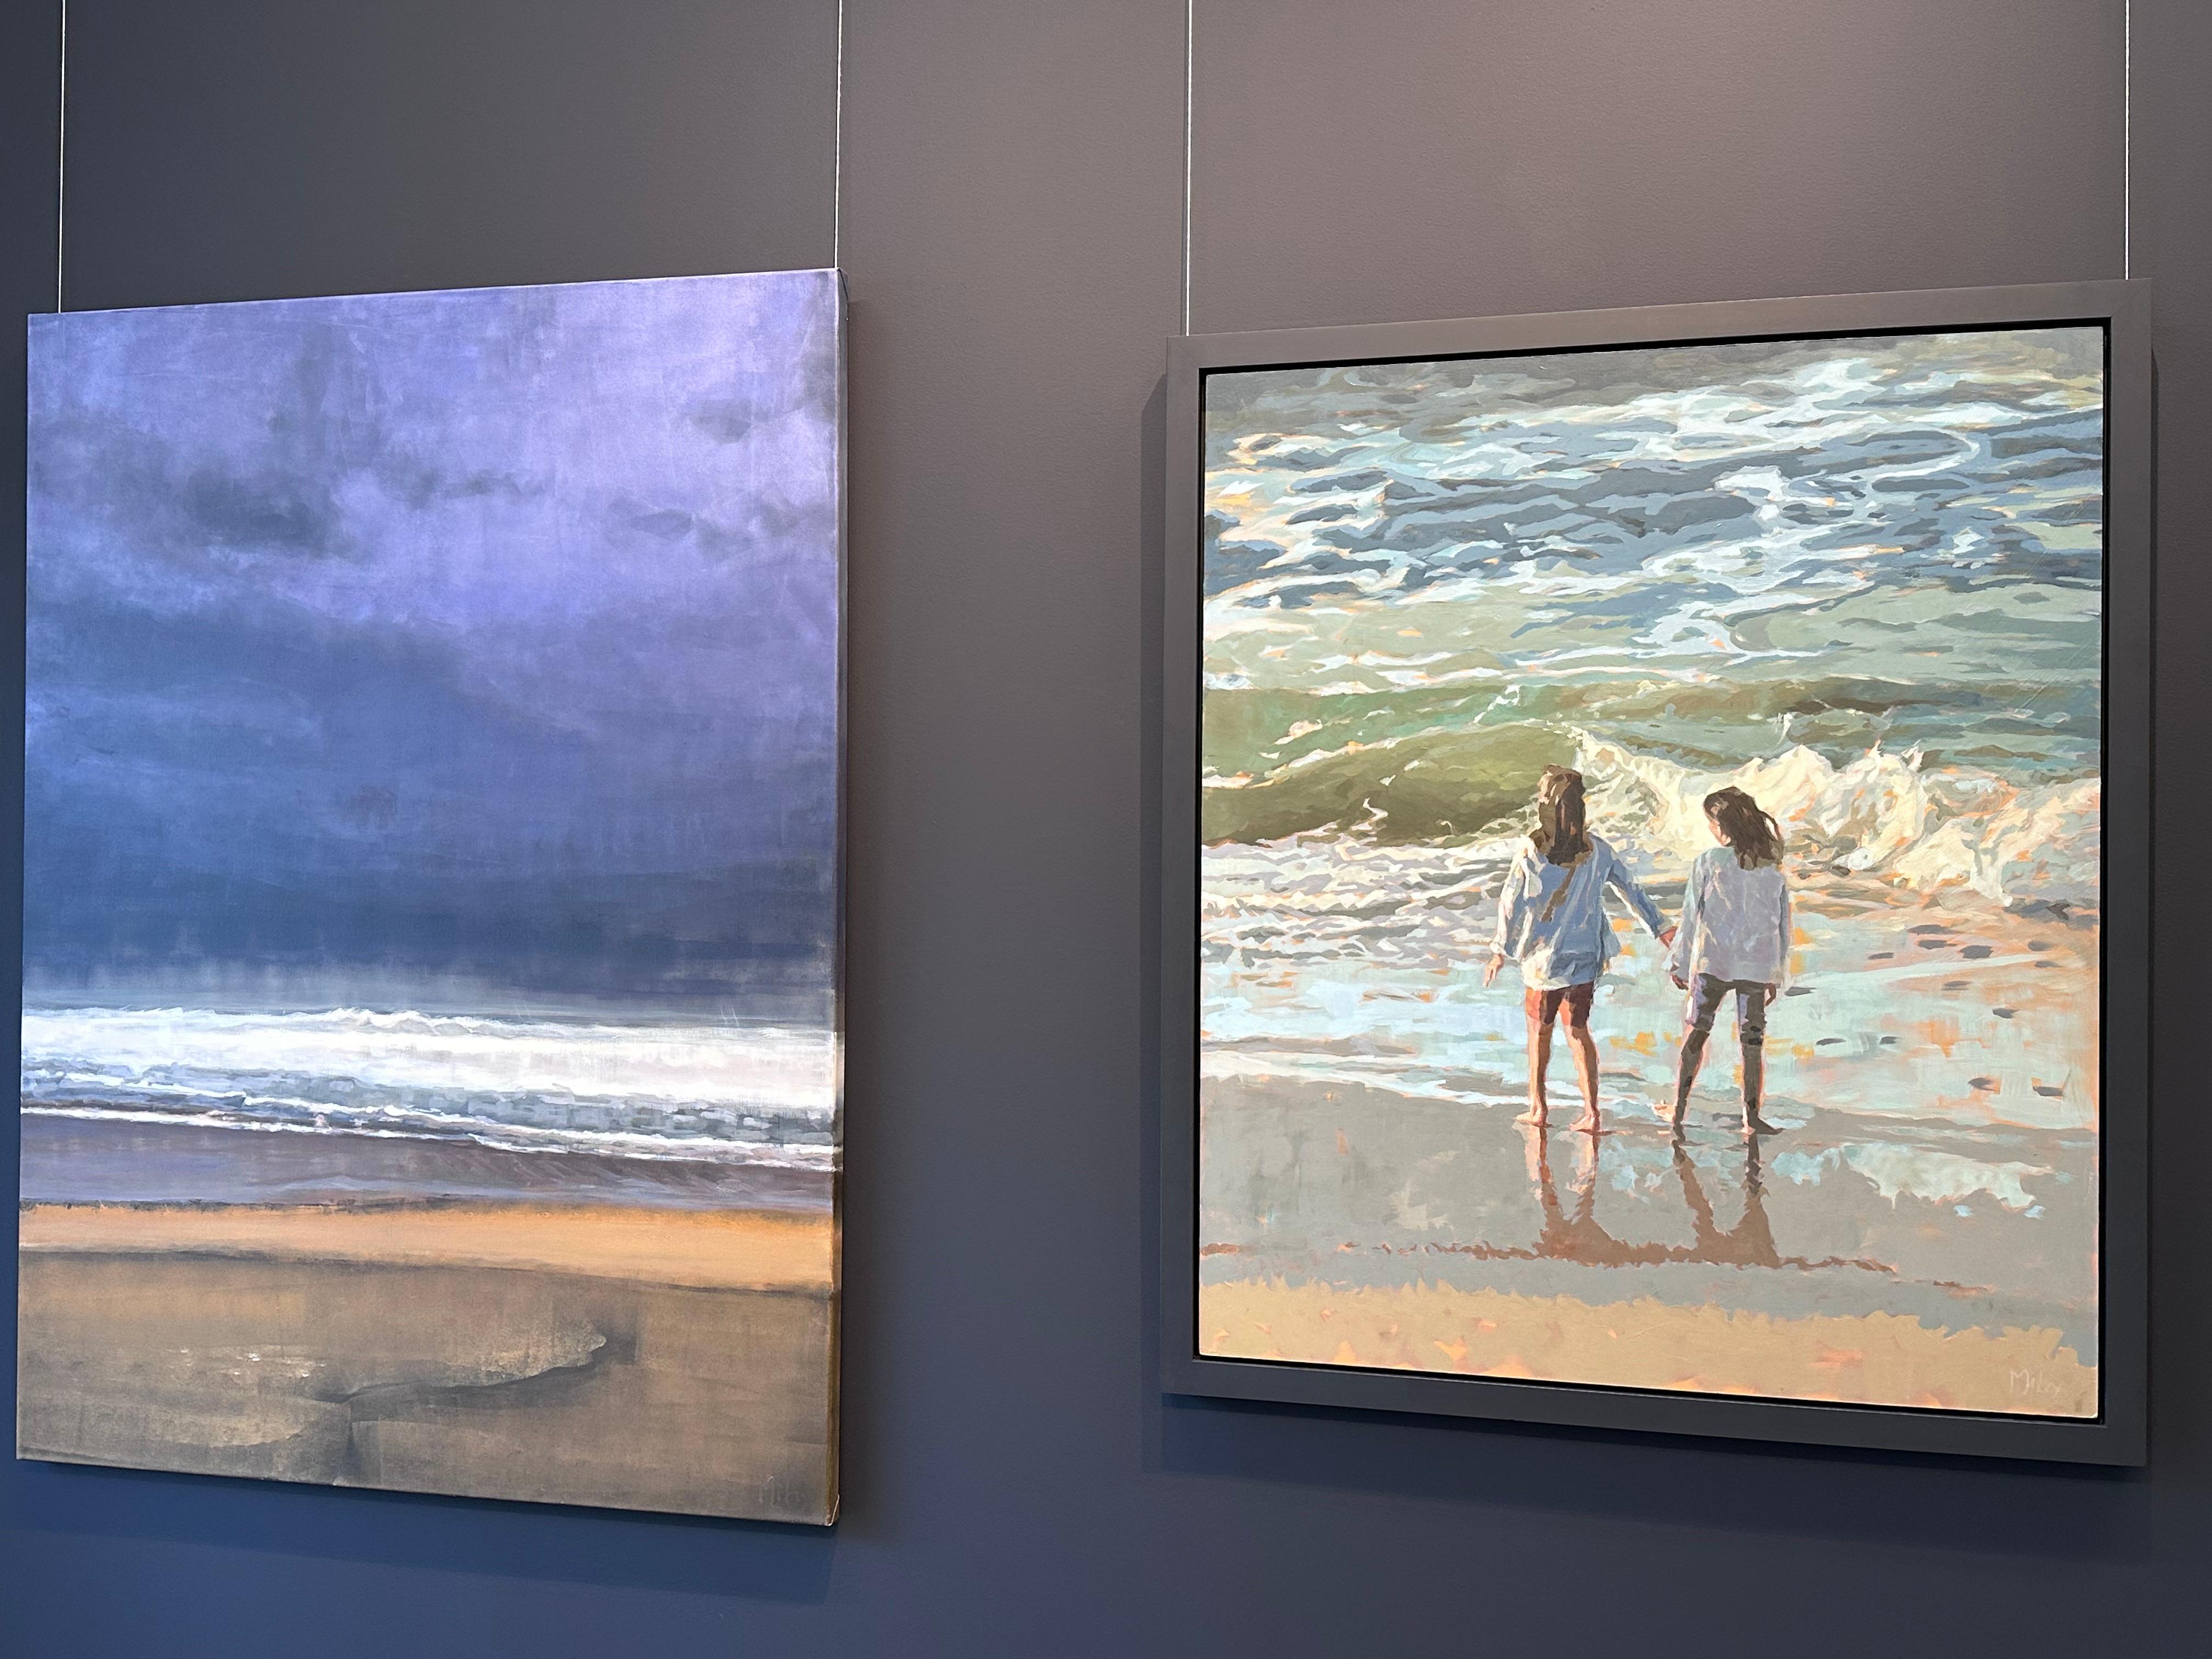 The Sea- 21ème siècle Peinture contemporaine de deux filles debout sur la plage - Painting de Mitzy Renooy